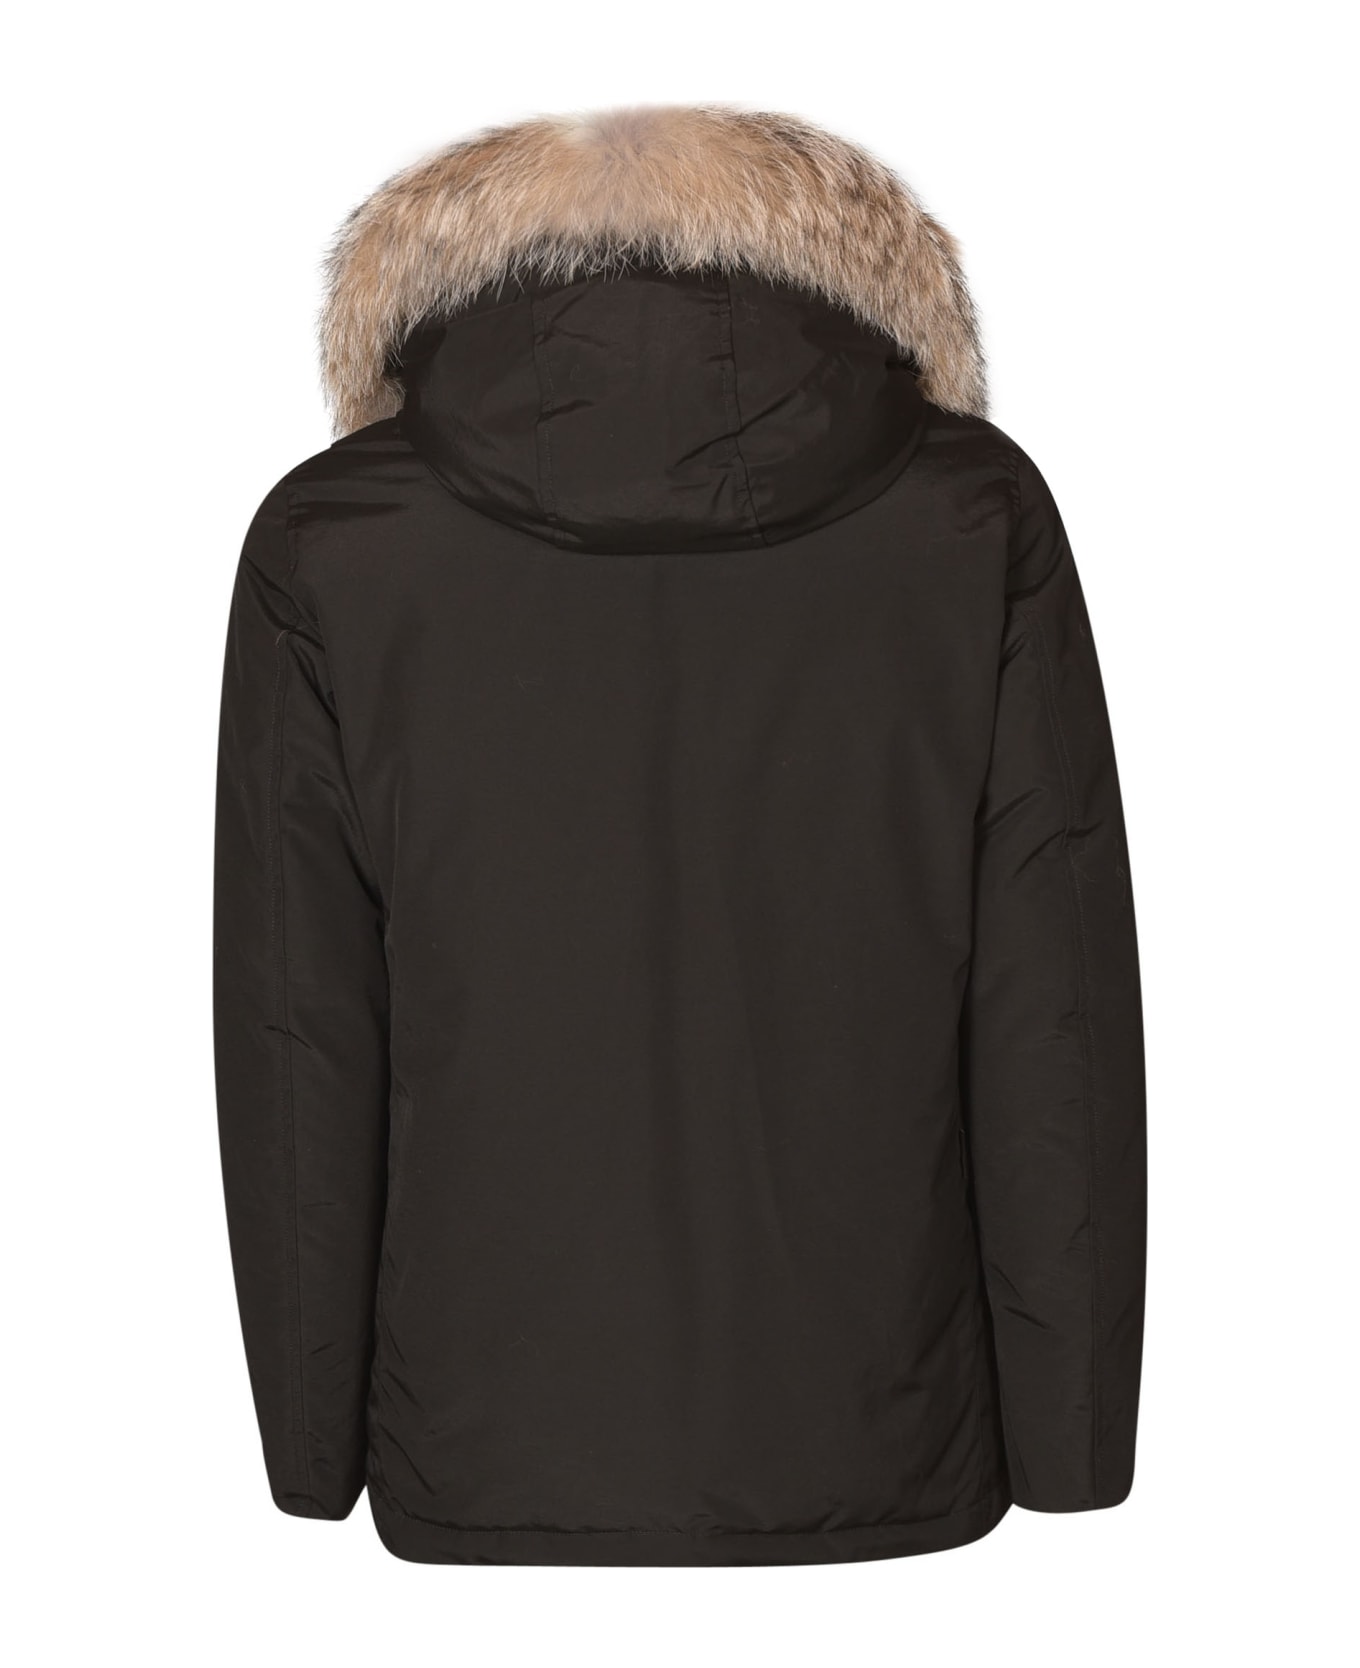 Woolrich Arctic Detachable Fur Parka - Black コート